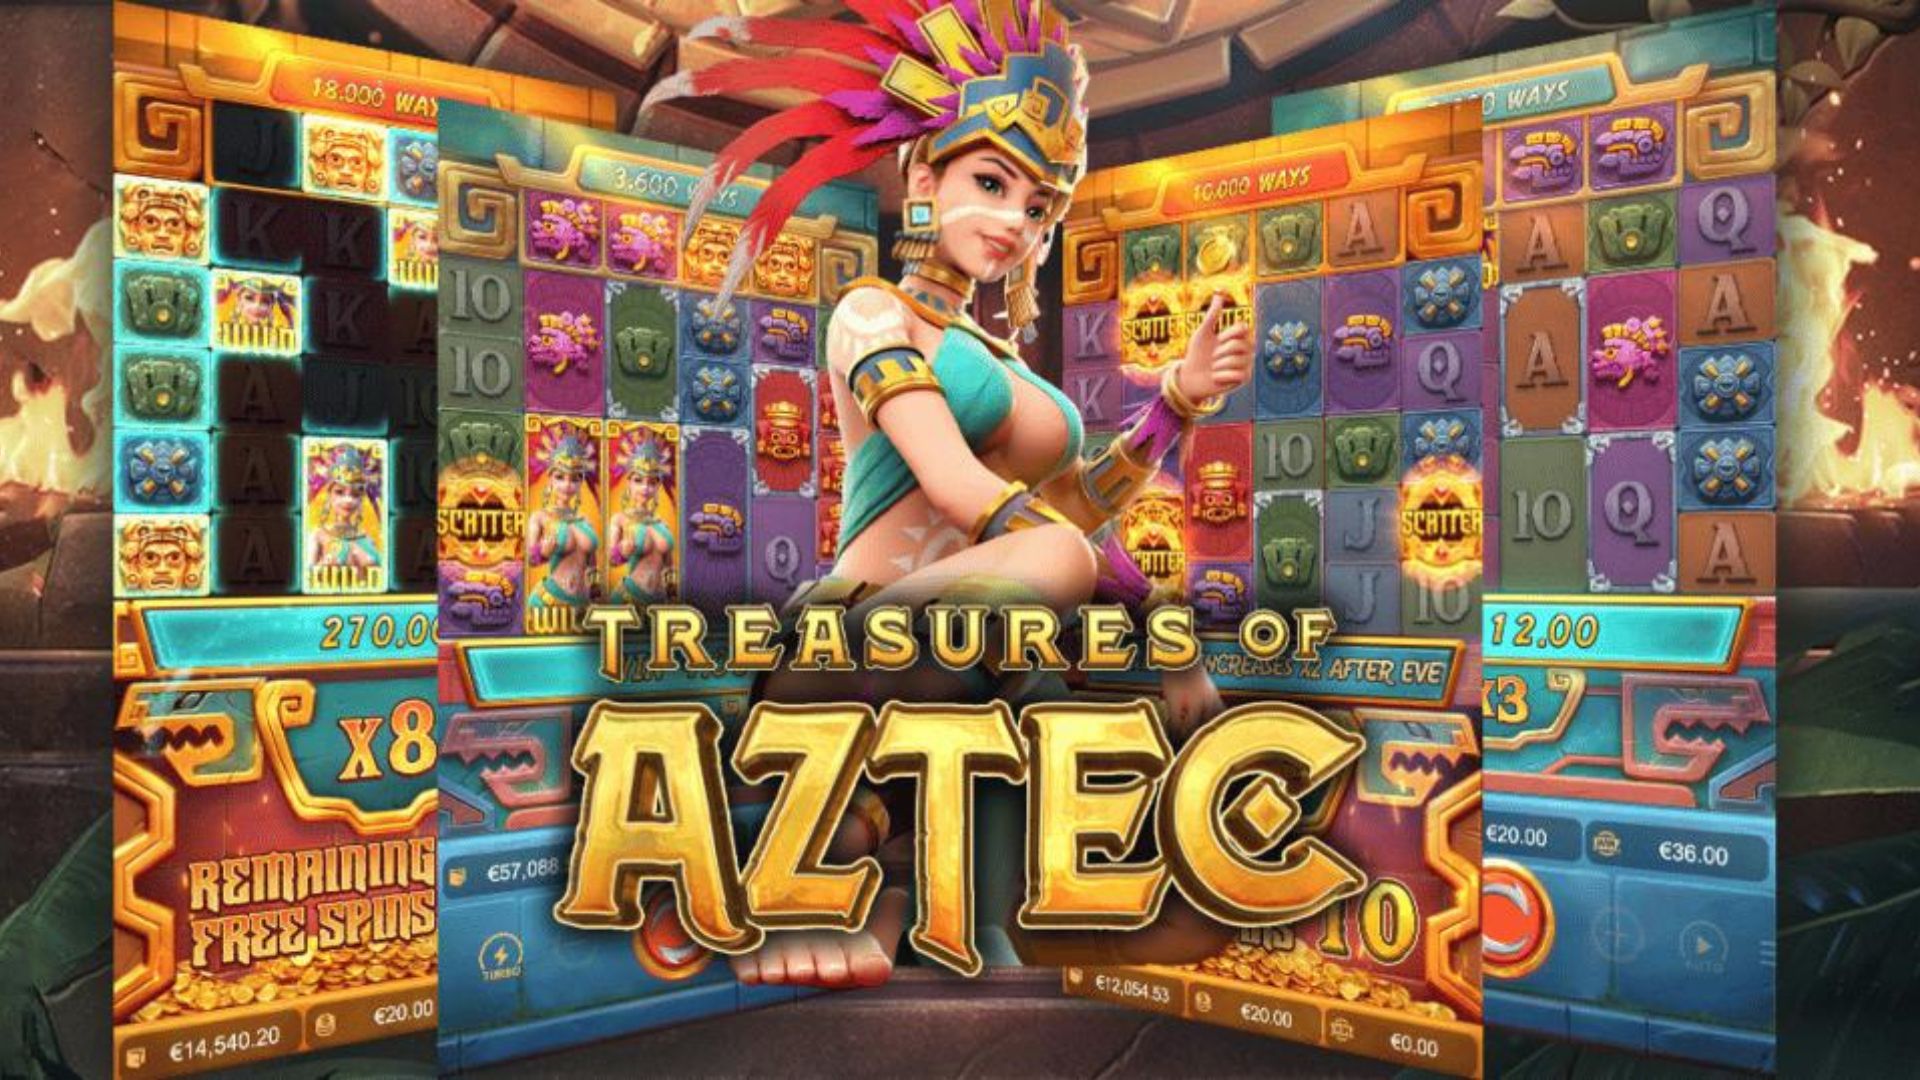 Slot Online “Treasures of Aztec” dari PGsoft: Potensi Menang Besar dengan Modal Kecil post thumbnail image